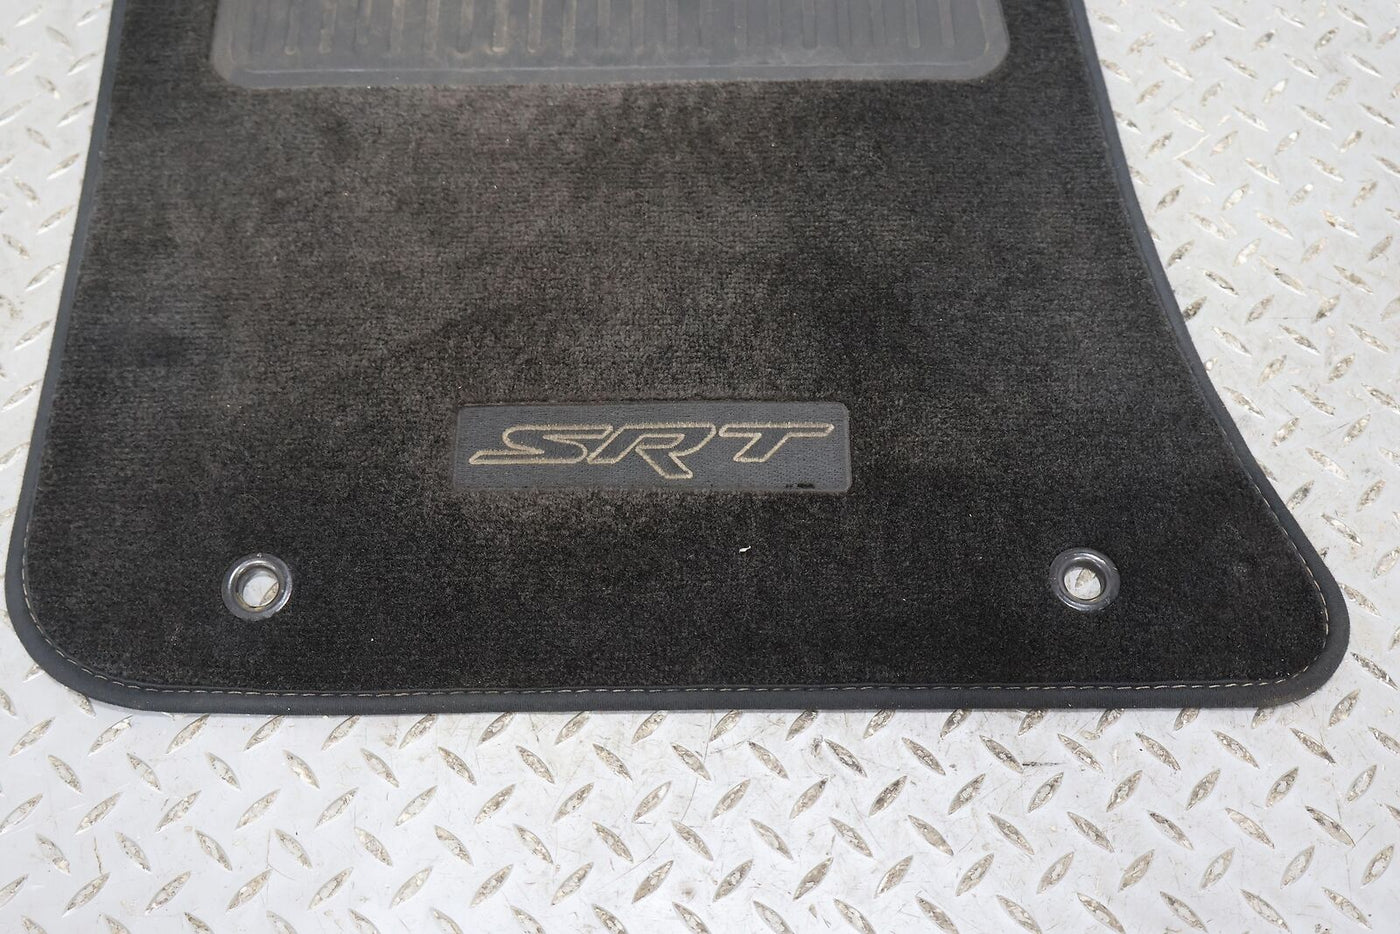 15-19 Dodge Challenger SRT OEM Cloth Floor Mats Set of 4 (Black) See Notes